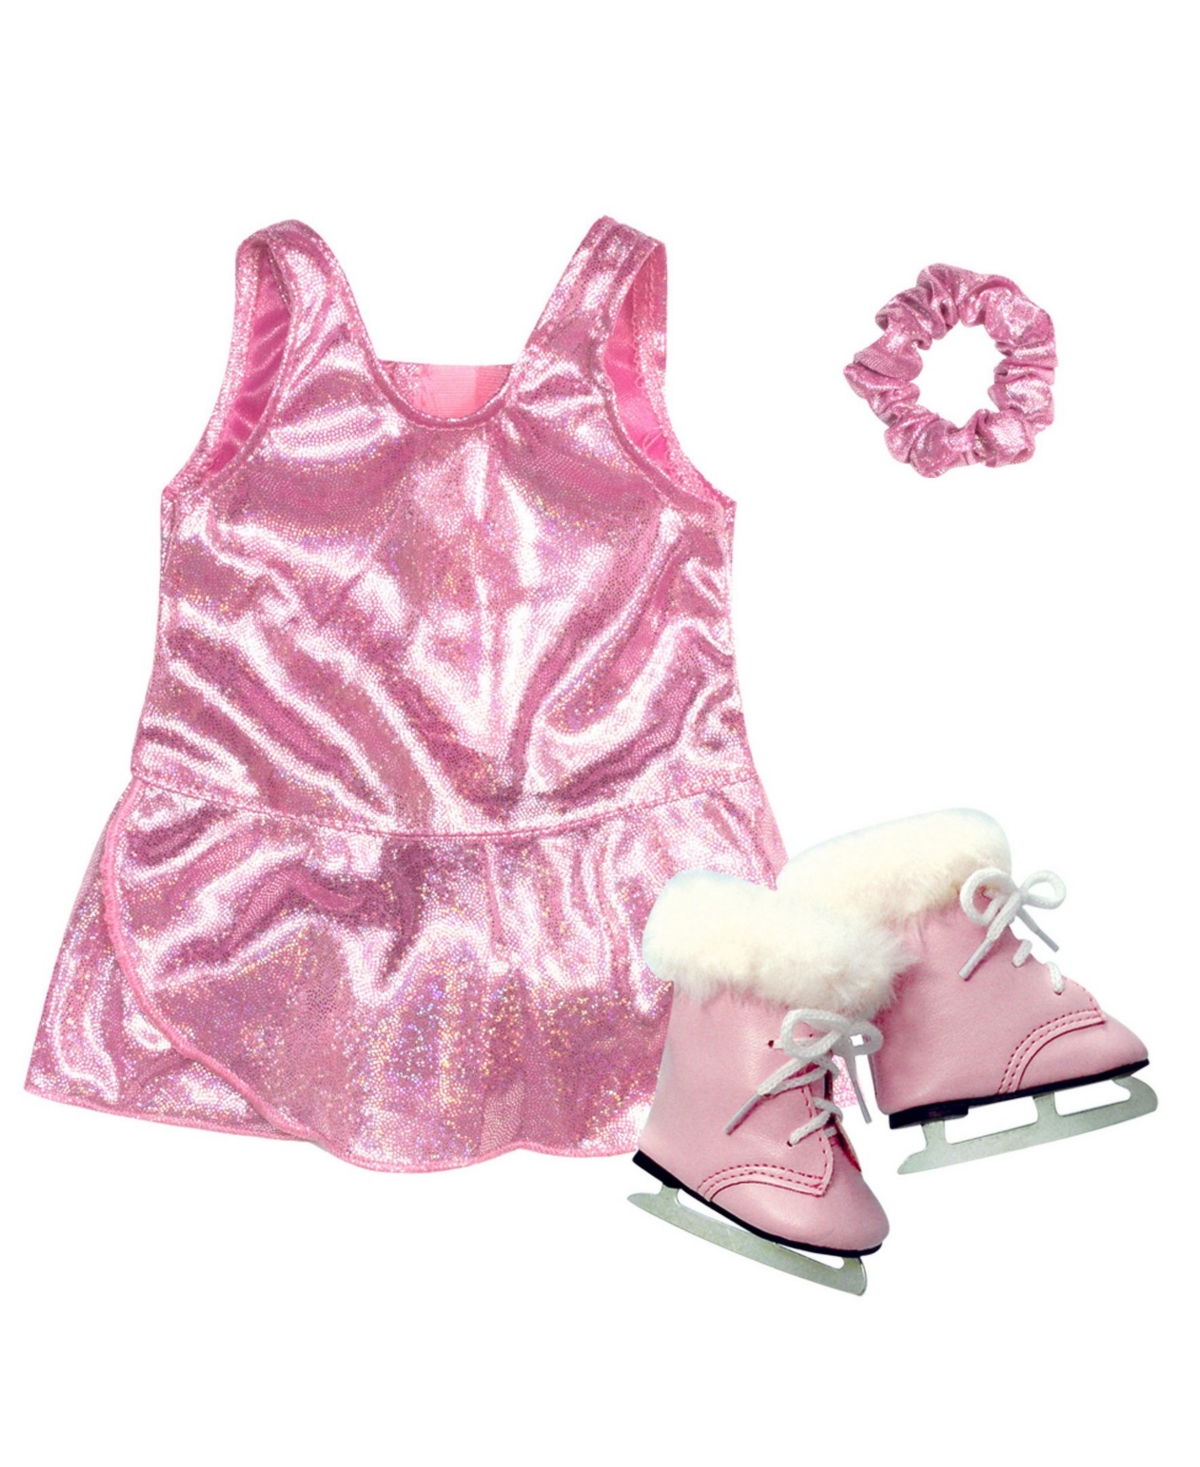 Teamson Kids' - 18" Doll In Pink